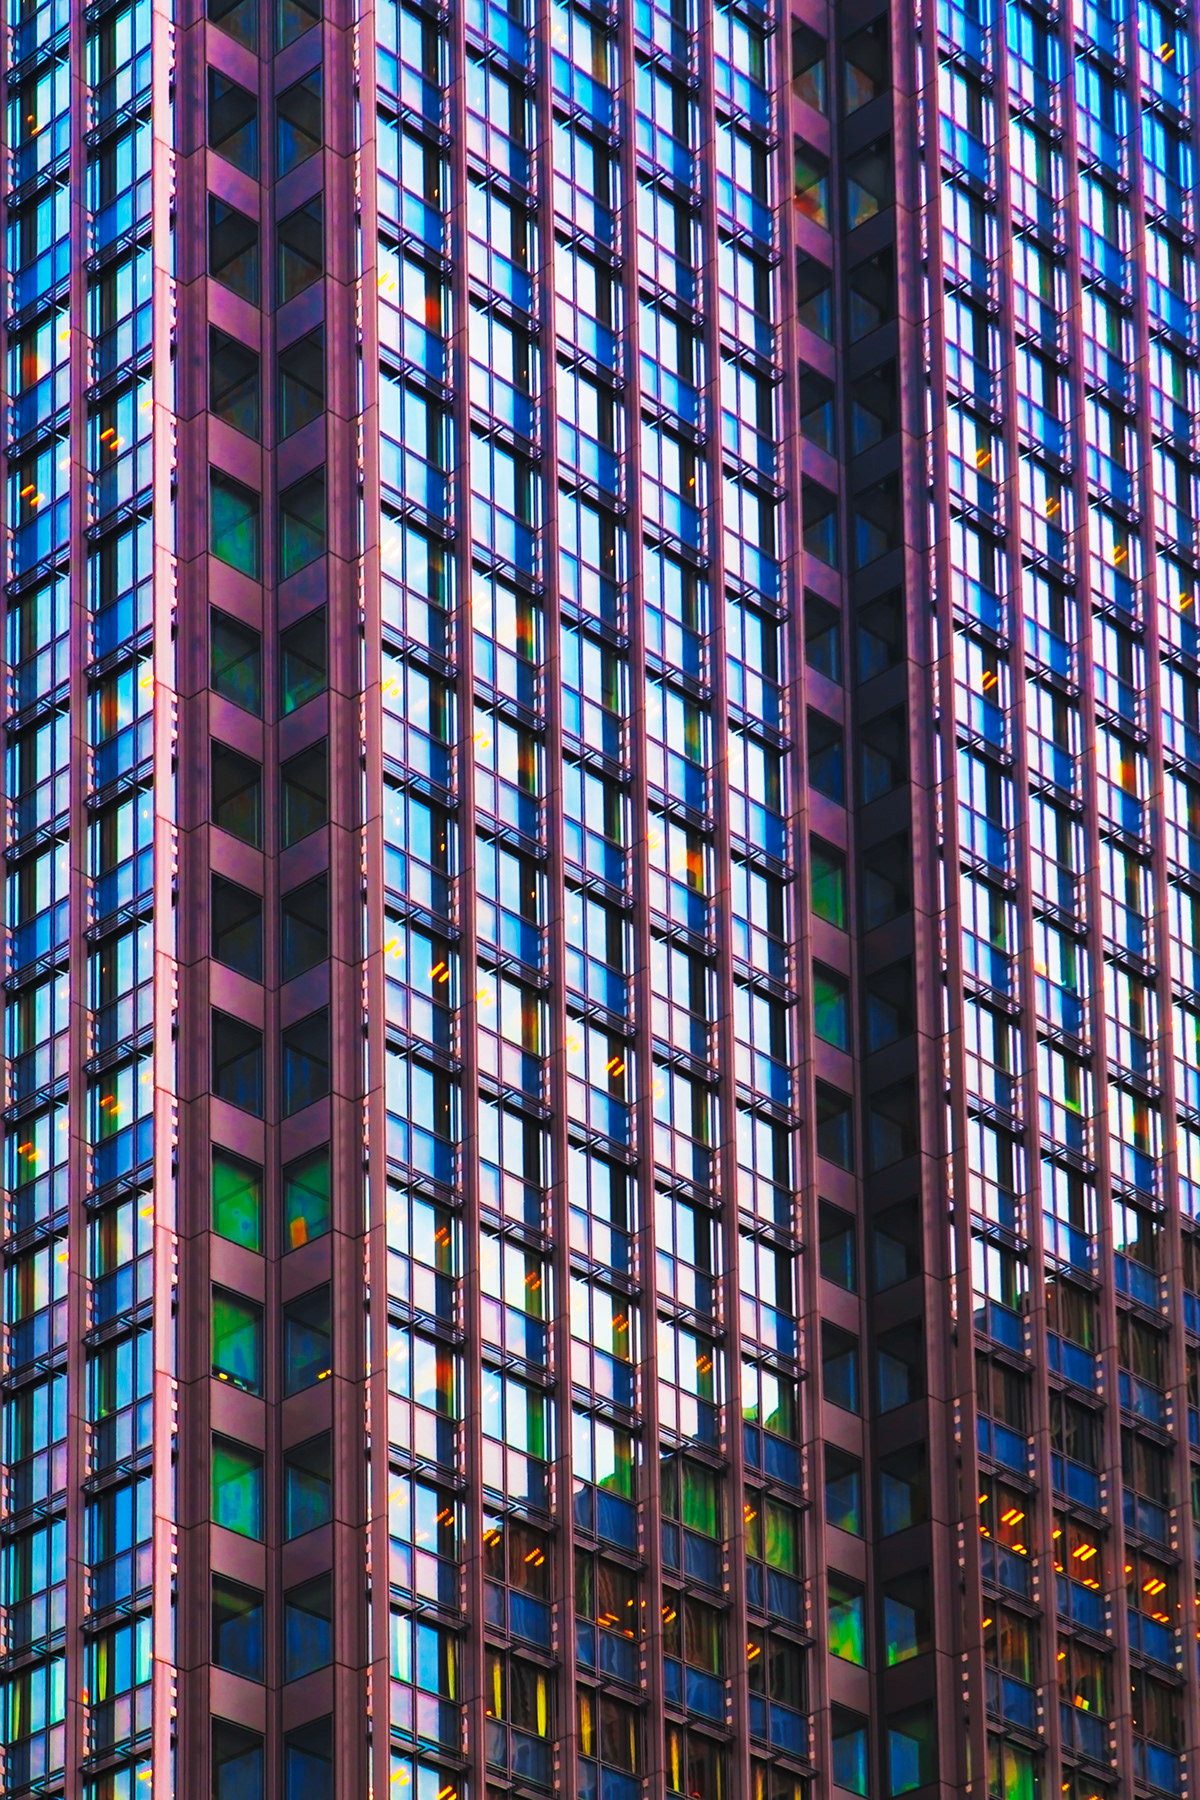 architecture building colours composition Harmony japan lines shapes squares windows